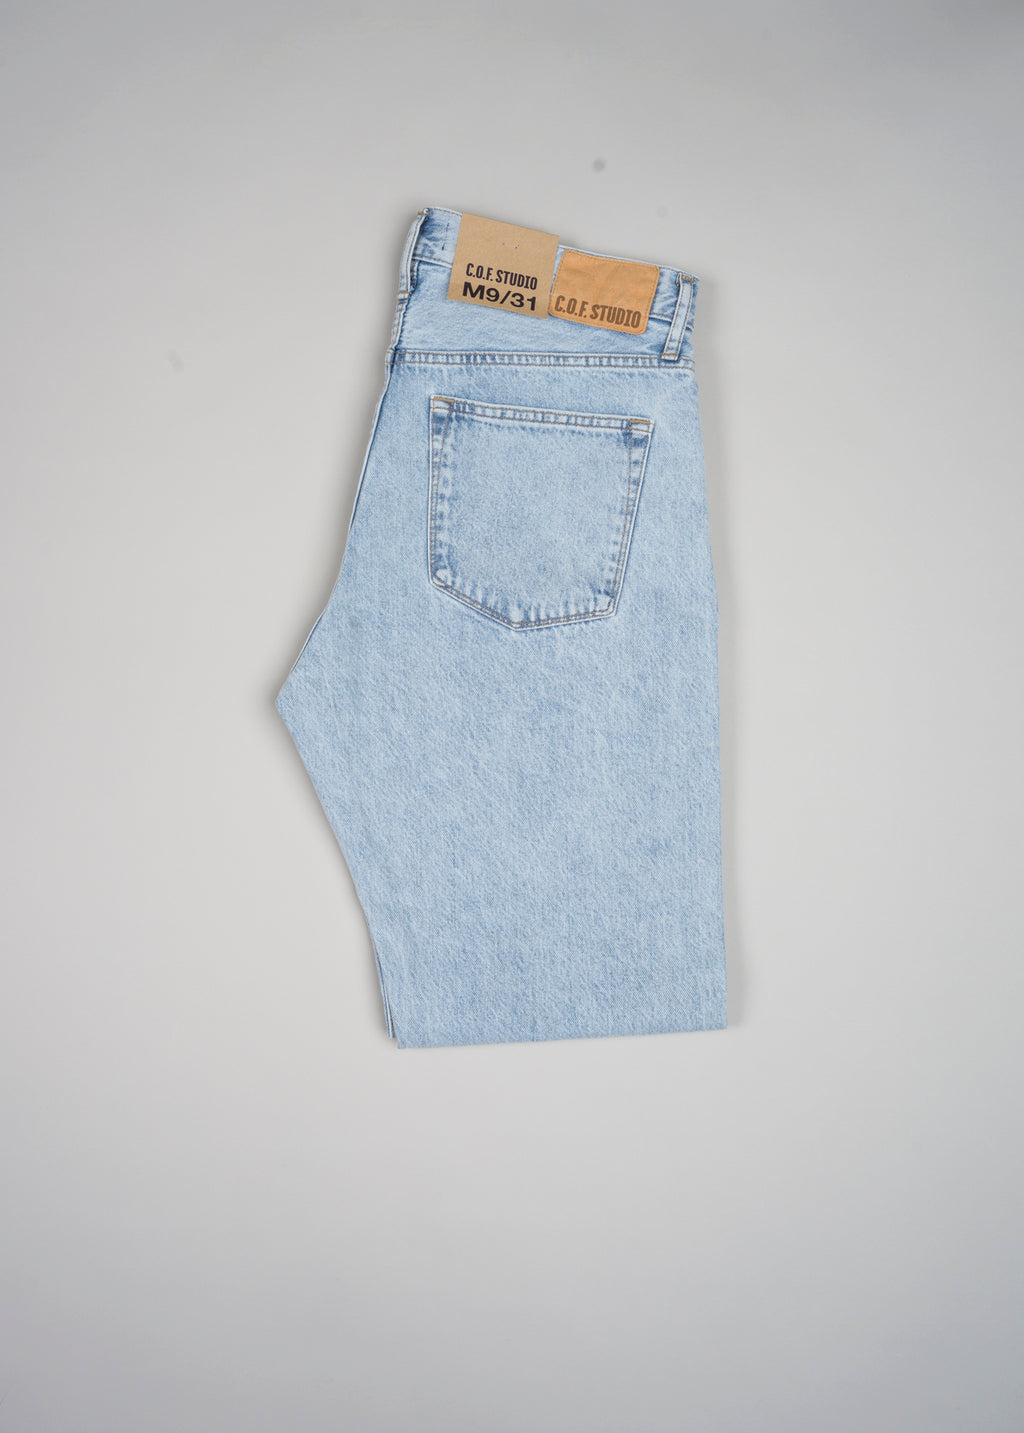 Men's Levi's Jeans Loose Straight Fit (D15)